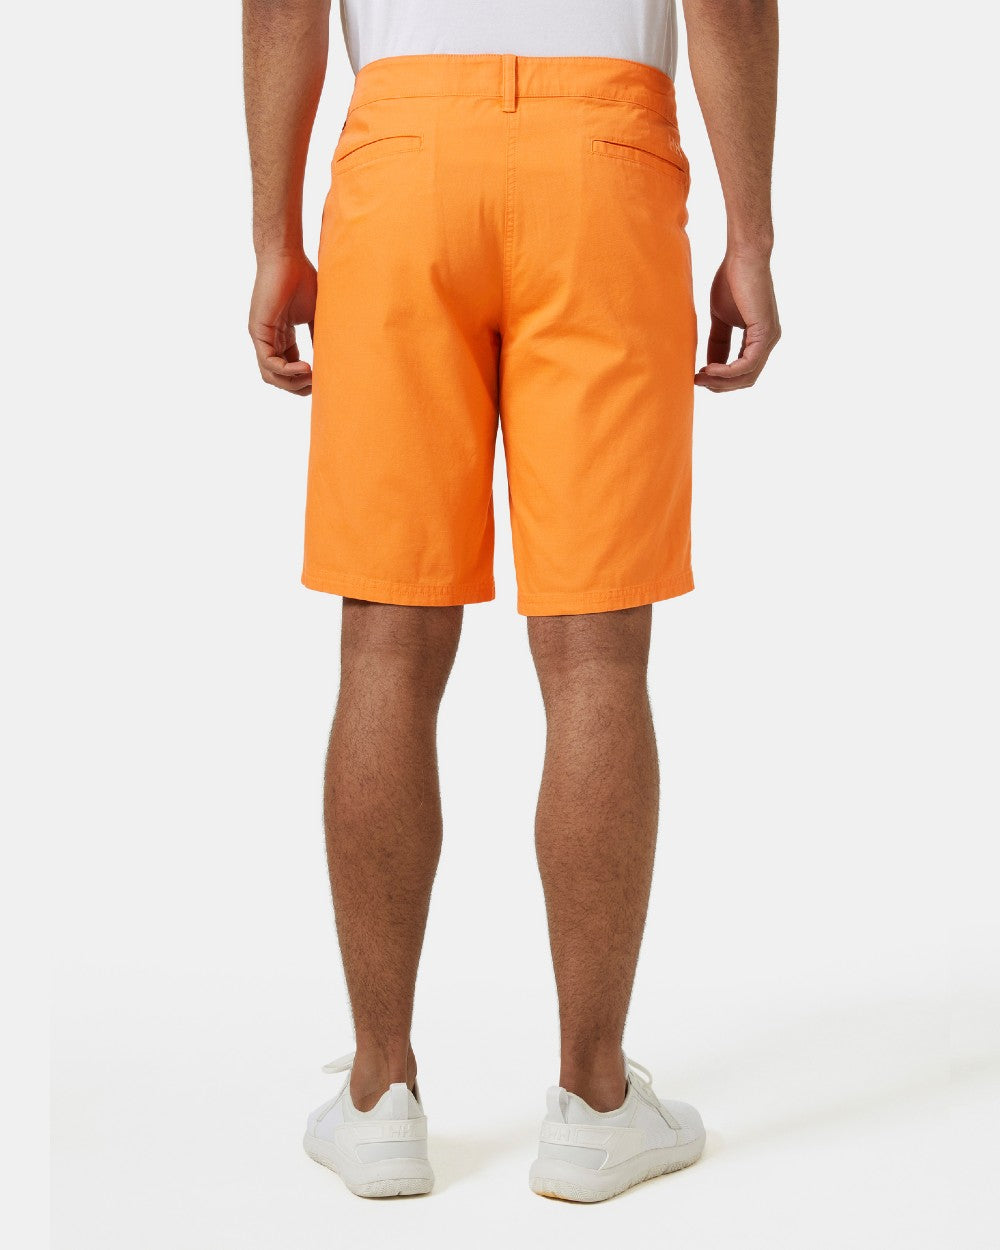 Poppy Orange coloured Helly Hansen Mens Dock Shorts on grey background 